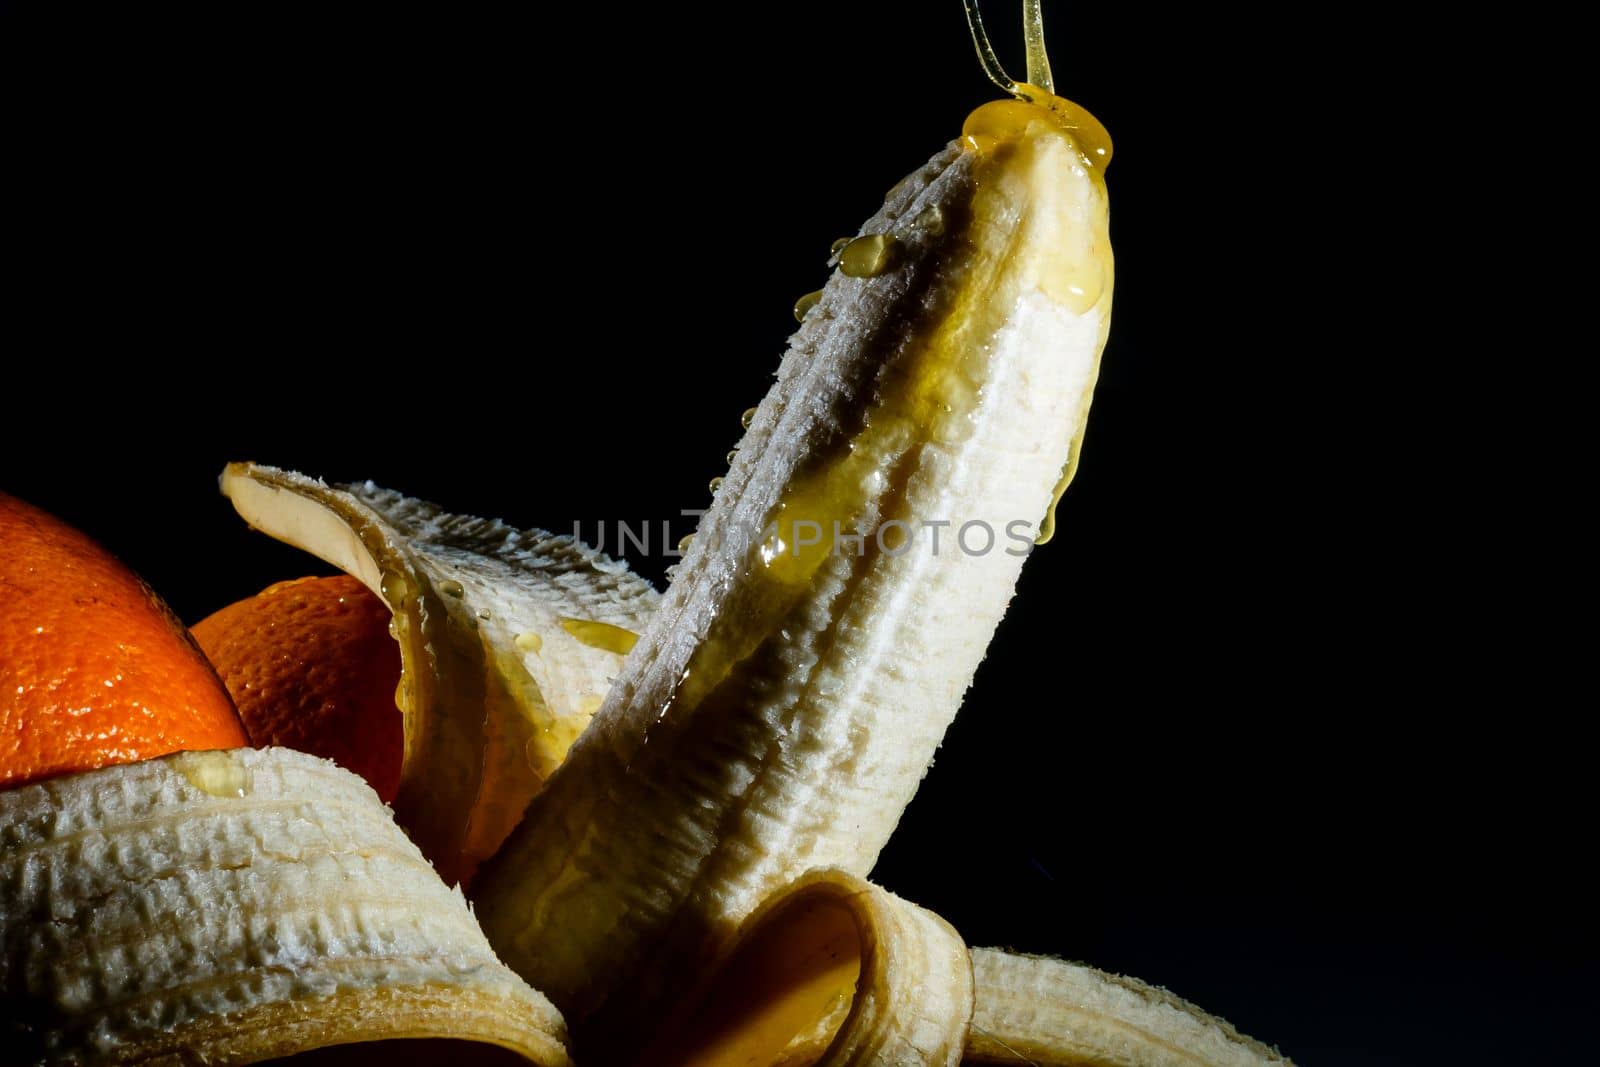 Close-up eating peeled banana by Andelov13